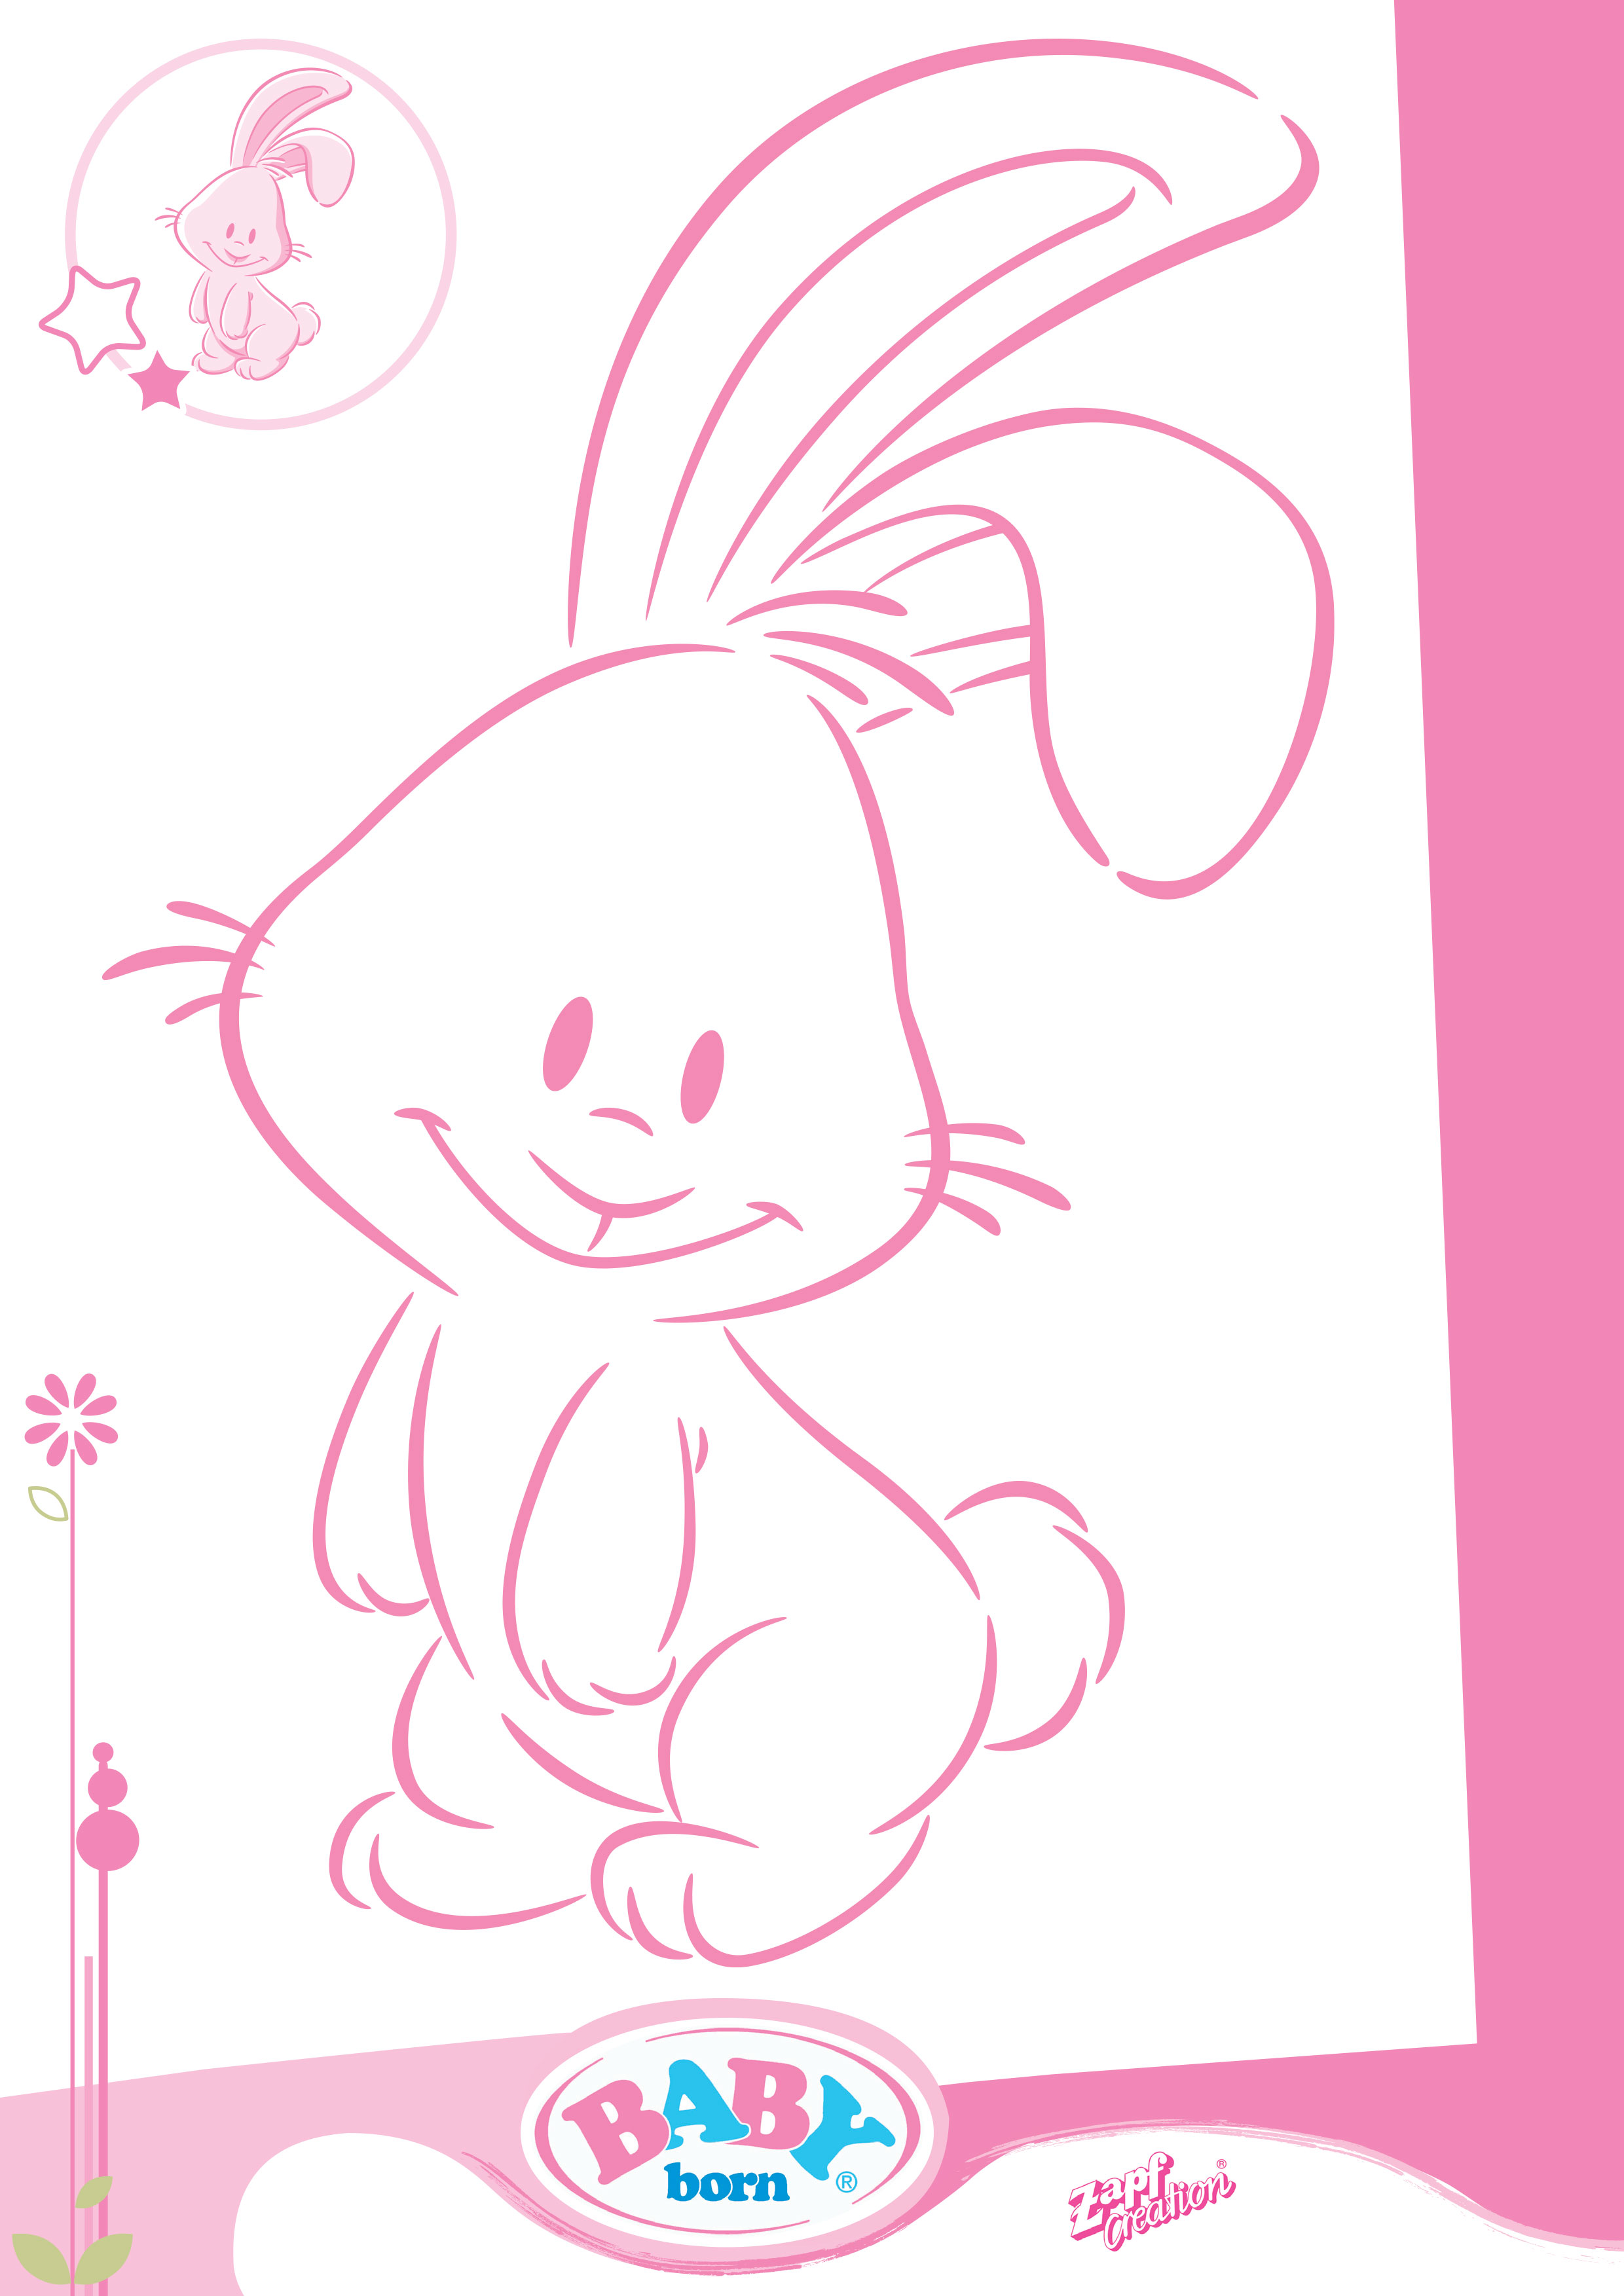 babyborn bunny2